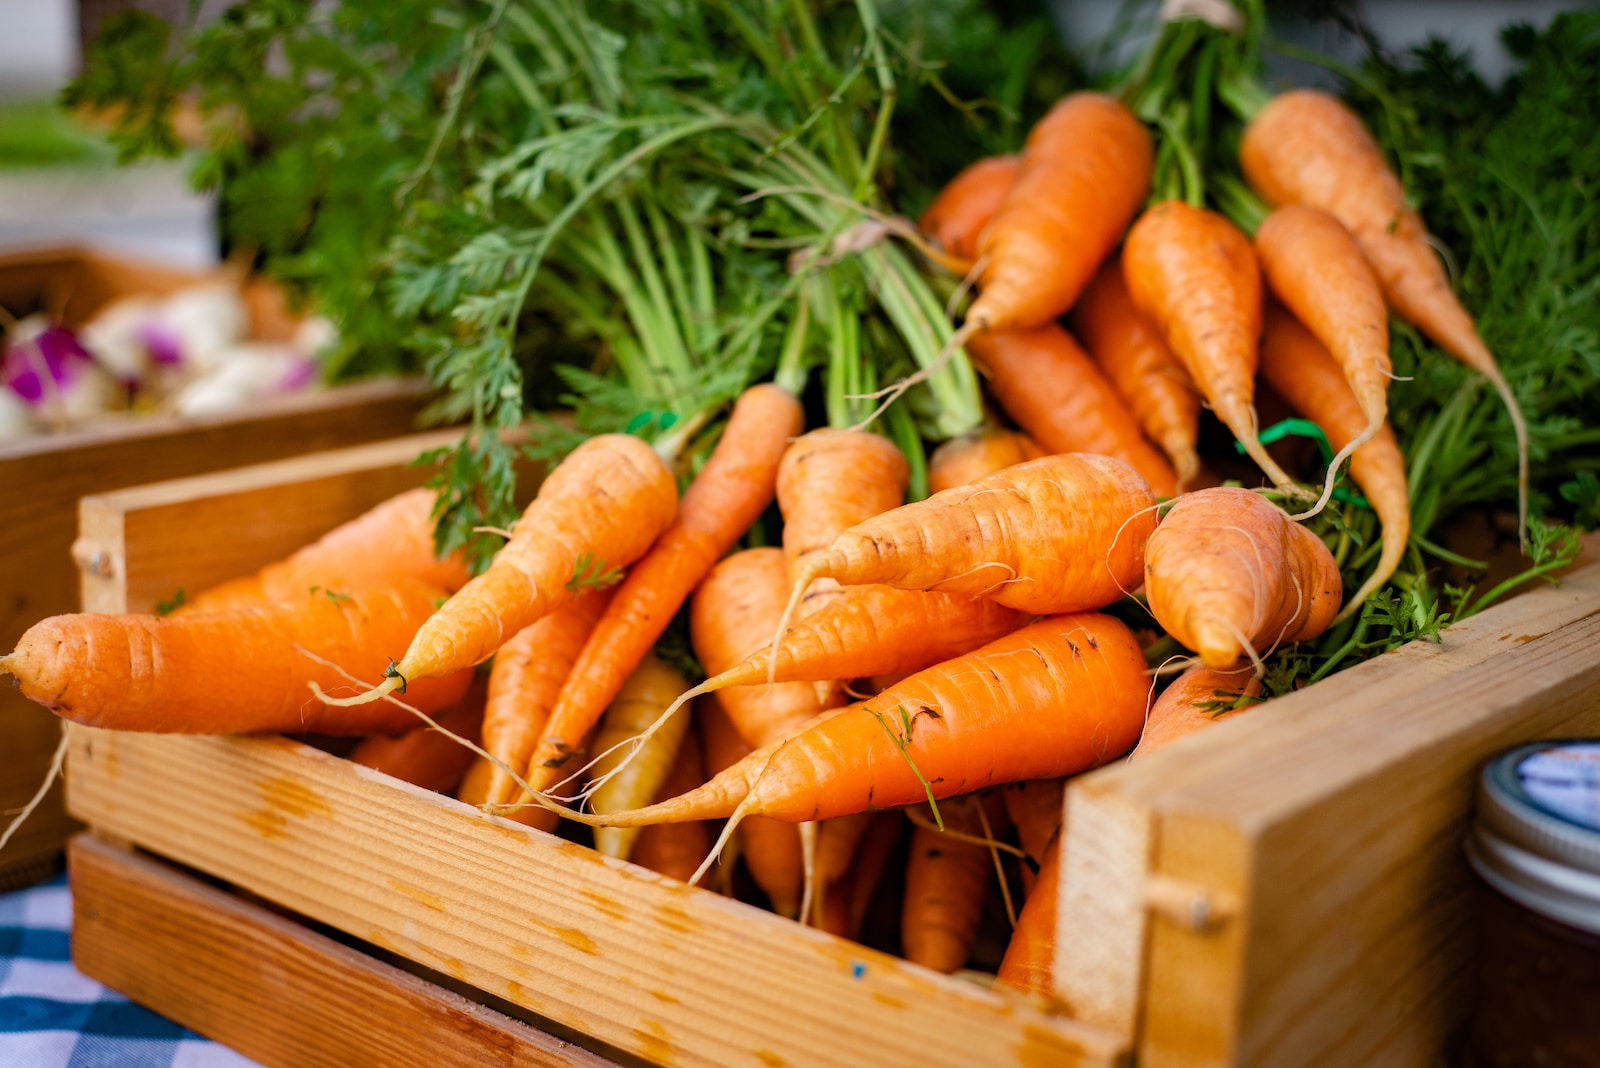 Les carottes sont un légume conseillé